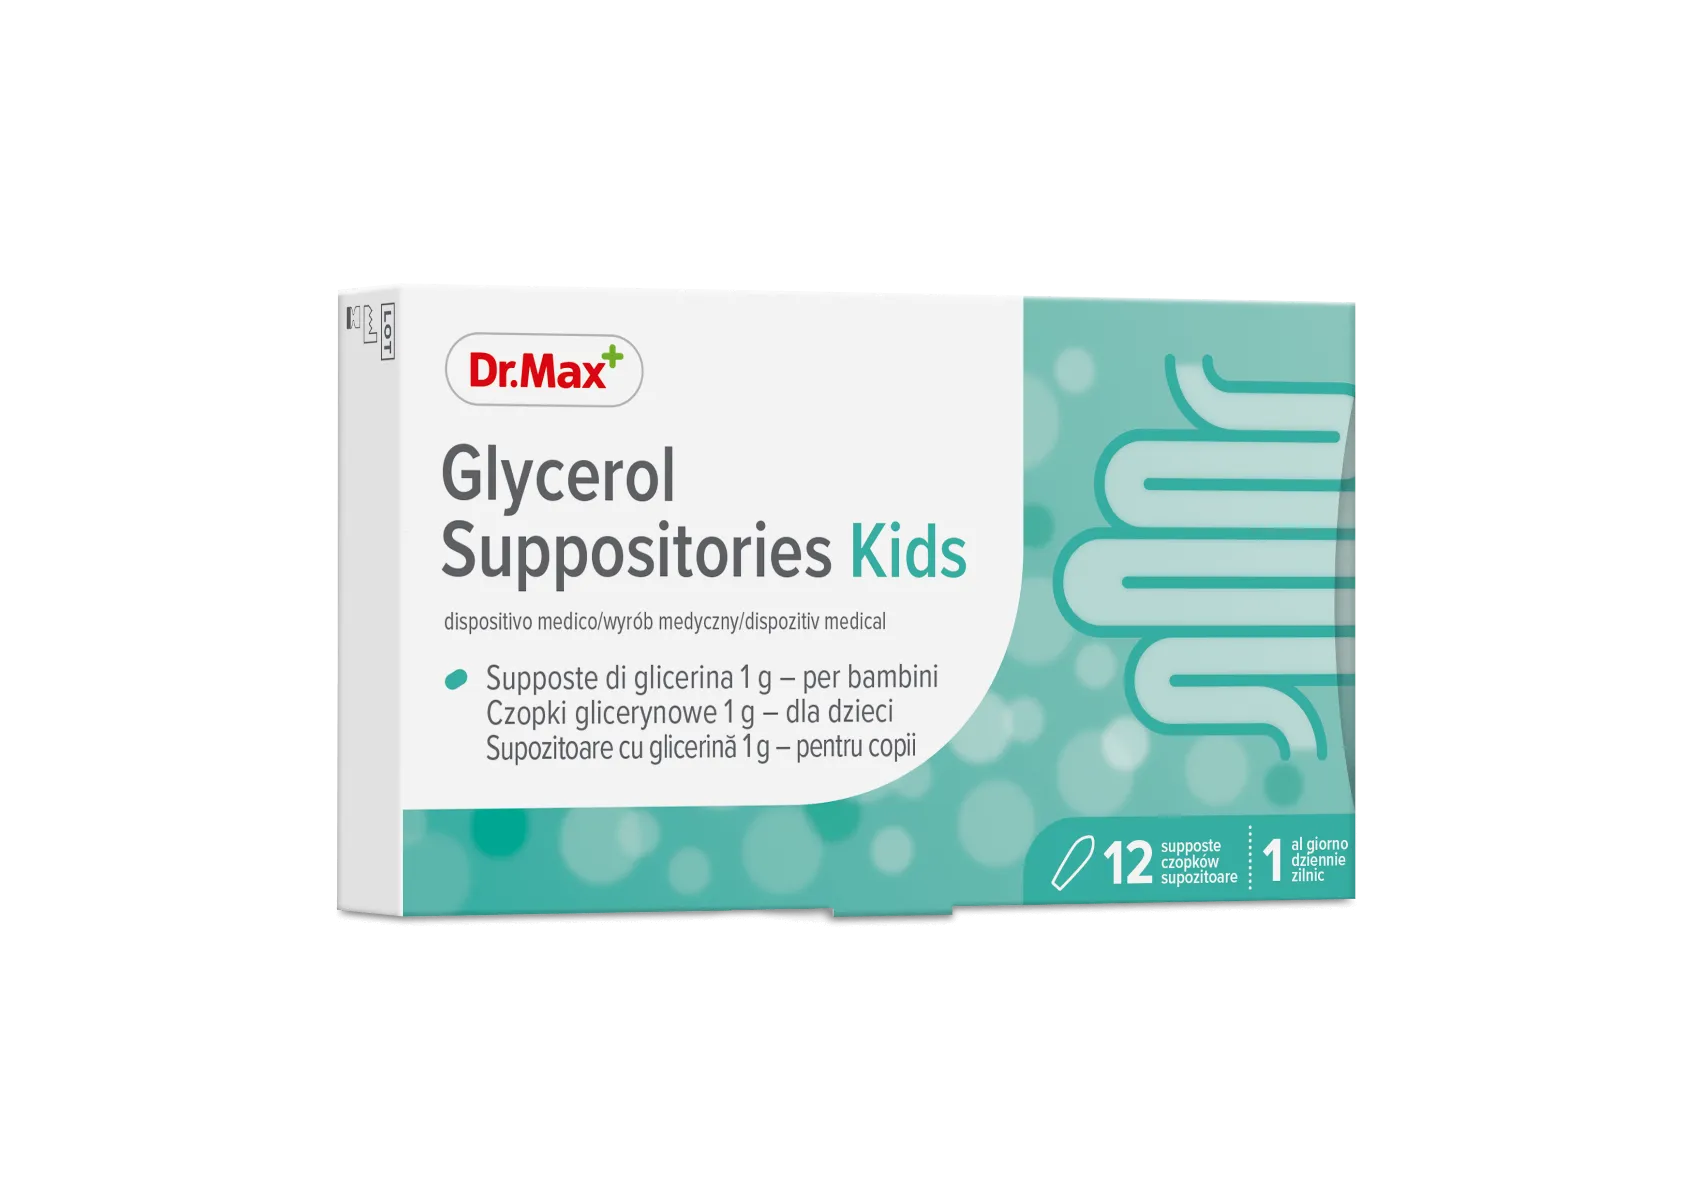 Glycerol Suppositories Kidys Dr.Max, czopki glicerynowe 1g dla dzieci, 12 sztuk